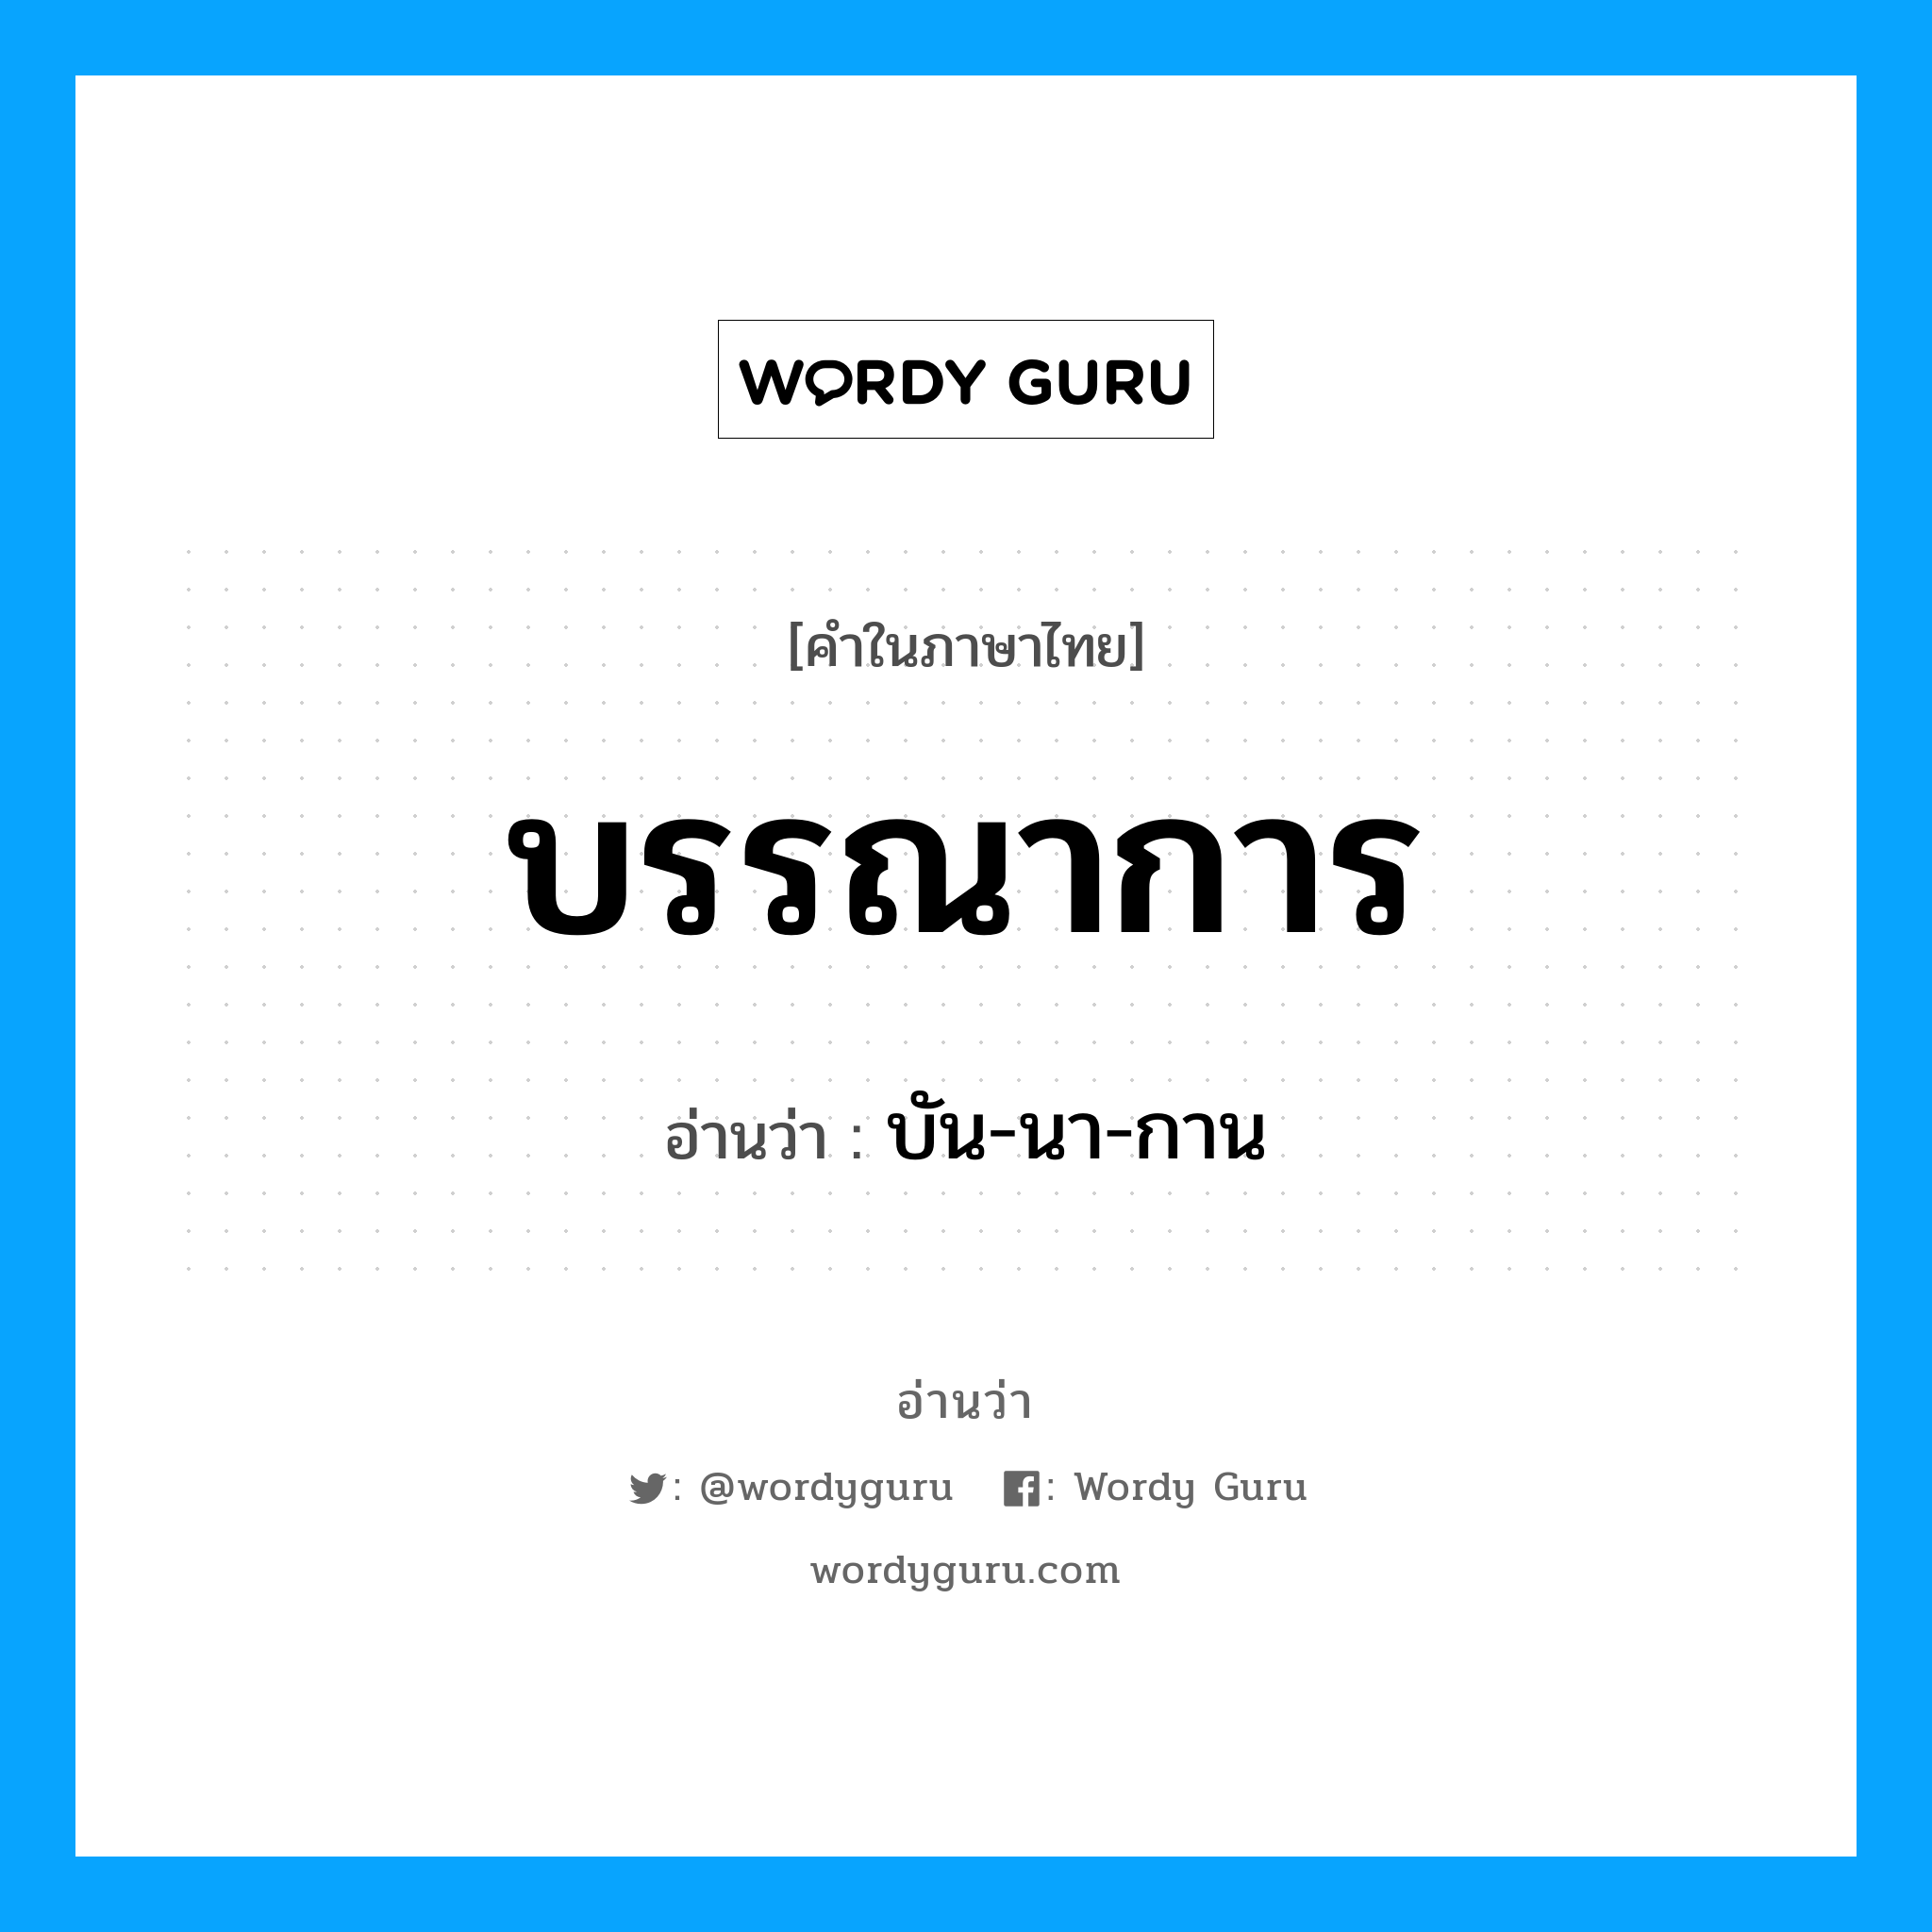 บรรณาการ อ่านว่า?, คำในภาษาไทย บรรณาการ อ่านว่า บัน-นา-กาน